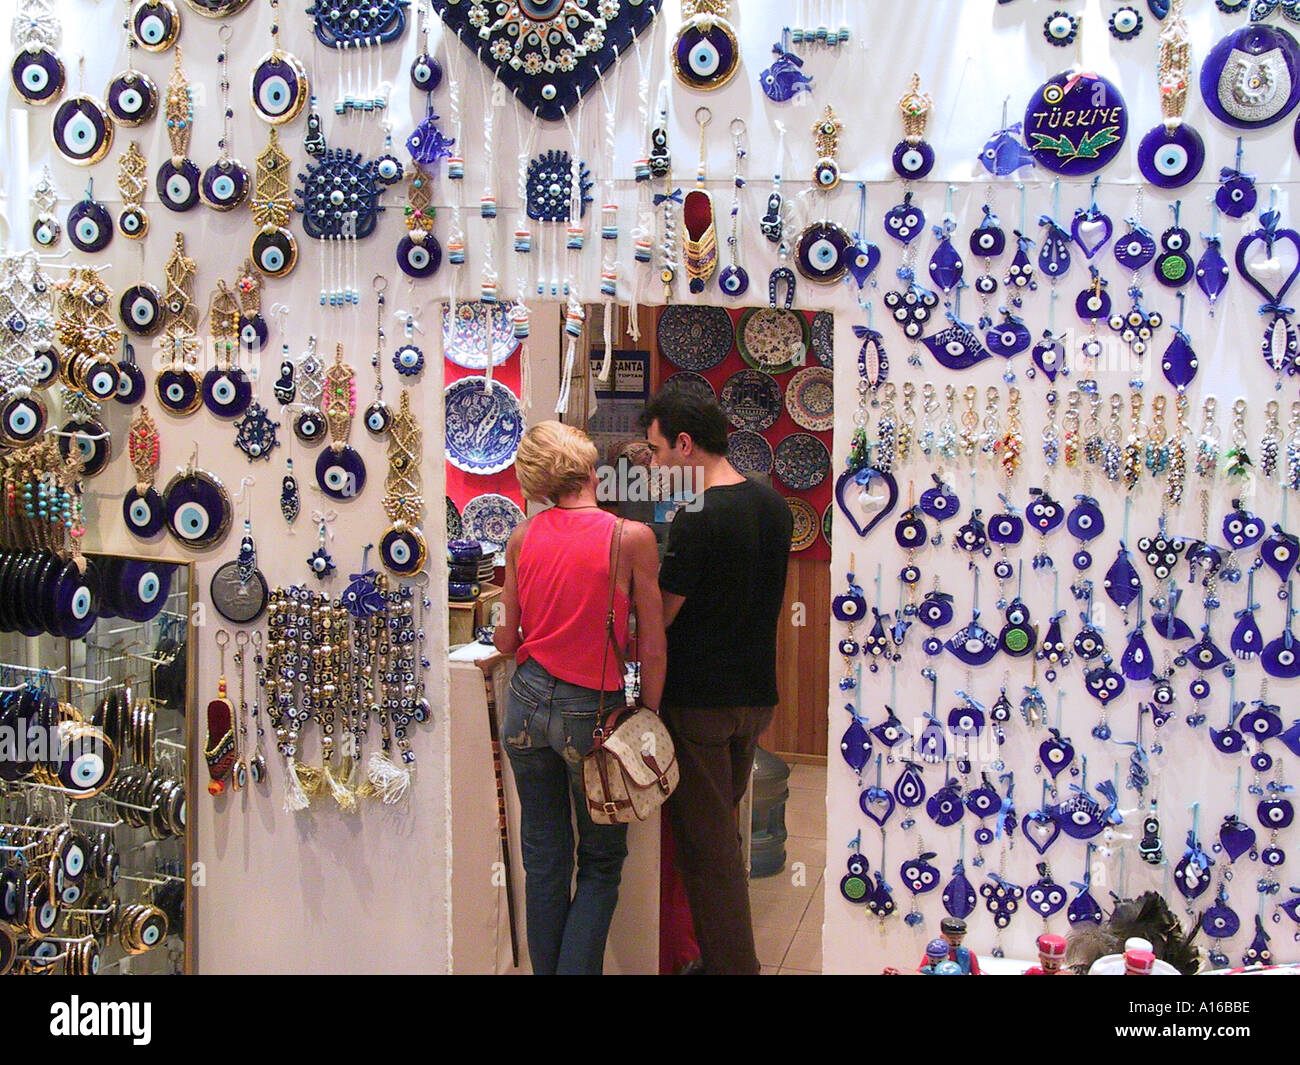 Oeil de Verre bleu boutique dans le Grand Bazar Istanbul - Capitale Européenne de la Culture 2010 - Turquie Banque D'Images